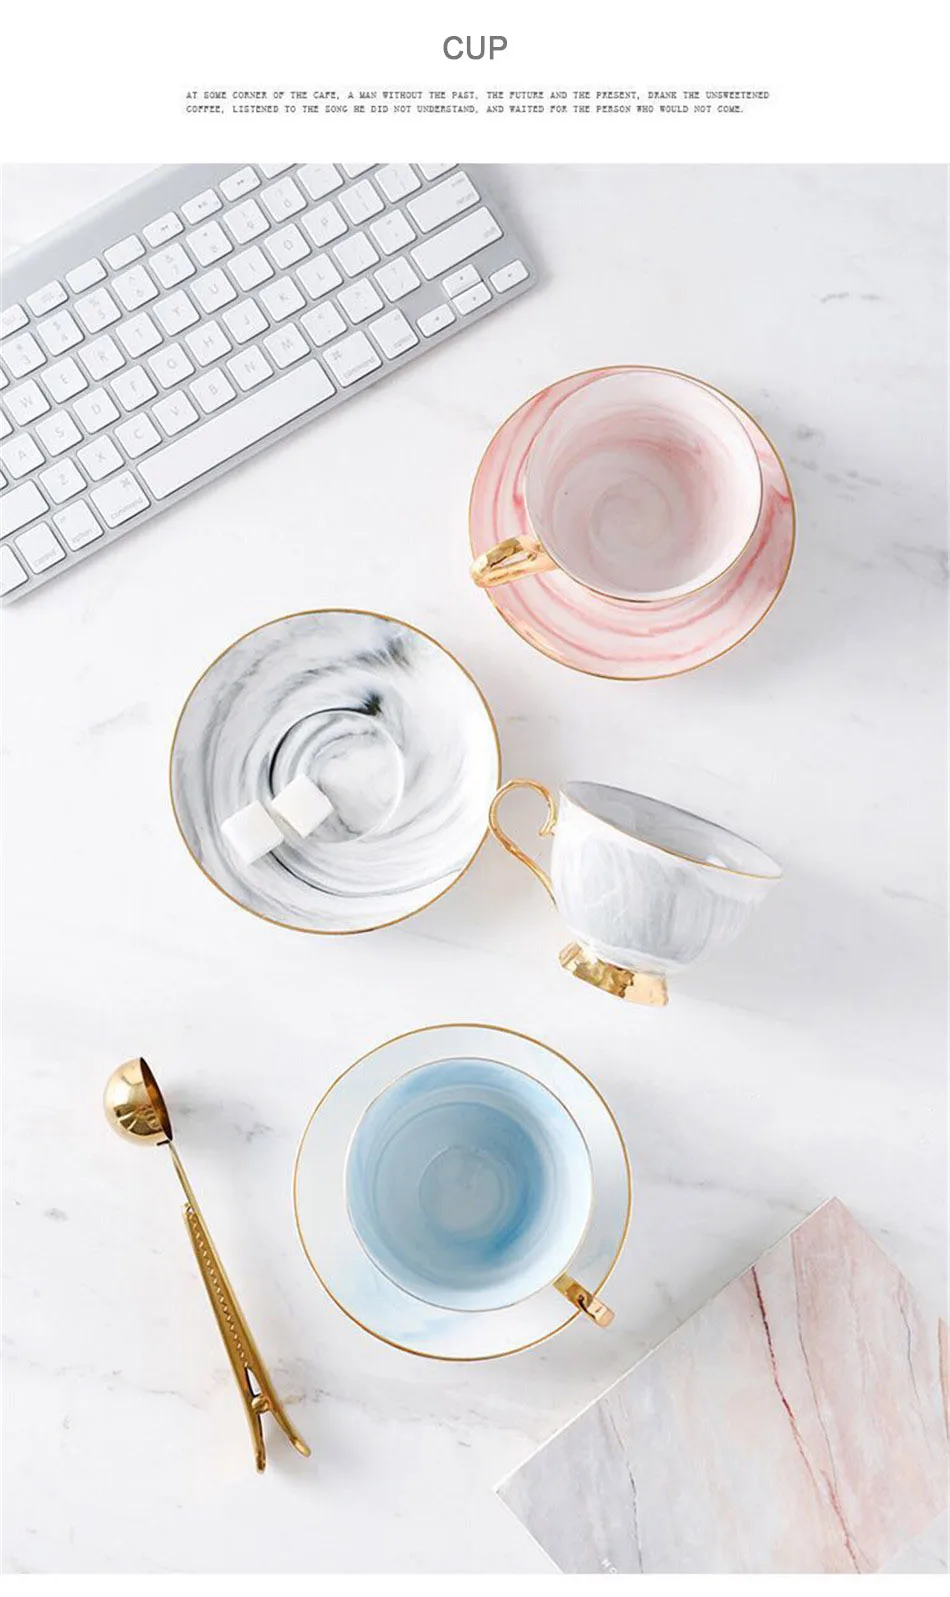 Мрамор узор Керамика Кофе чайные пары позолоченный фарфор Чай молочный завтрак Утро Кружка на день рождения подарок+ ложка блюд